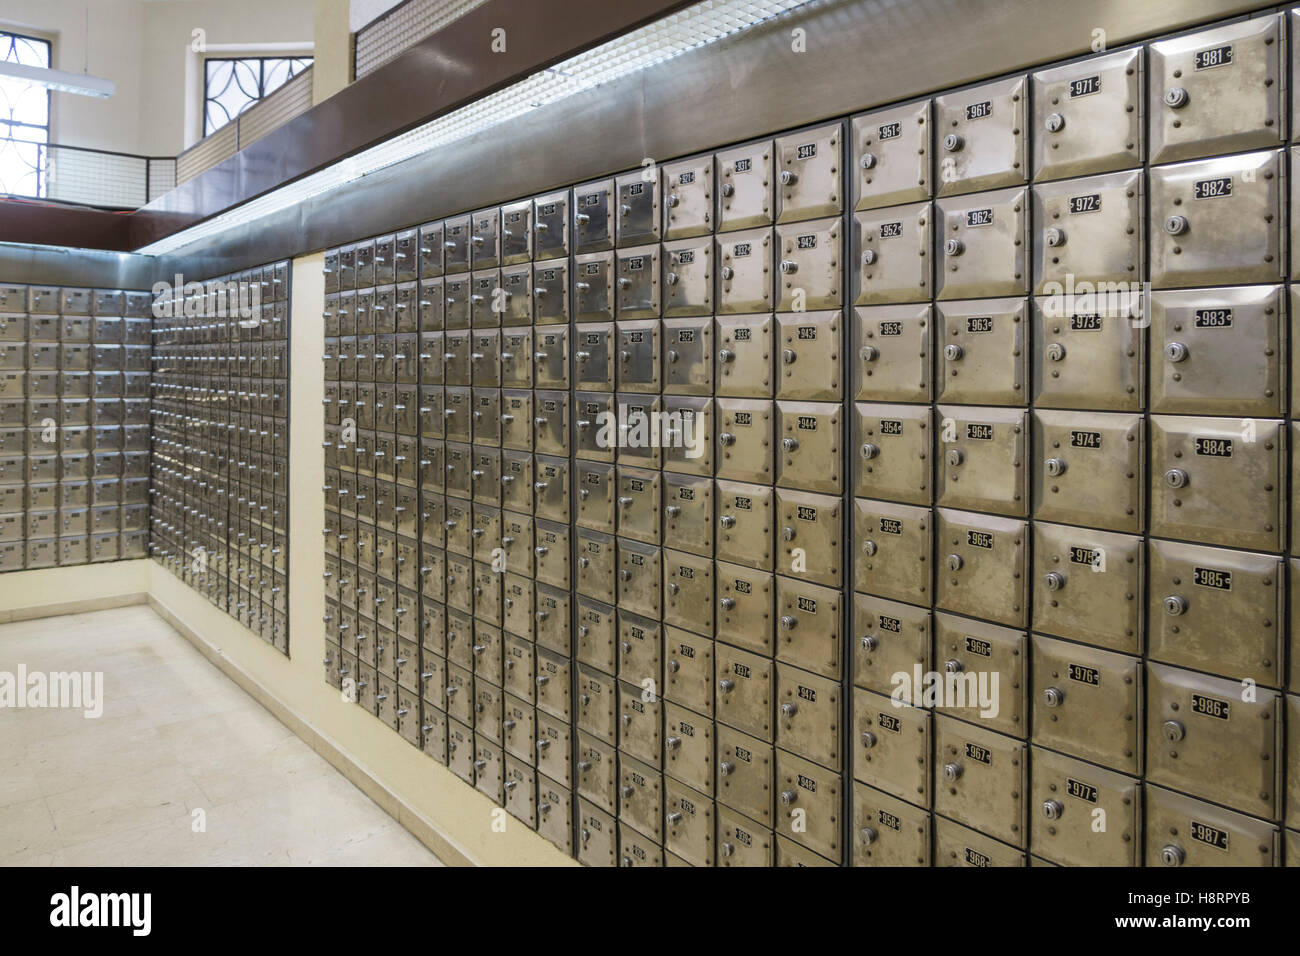 Safe deposit boxes at bank Stock Photo